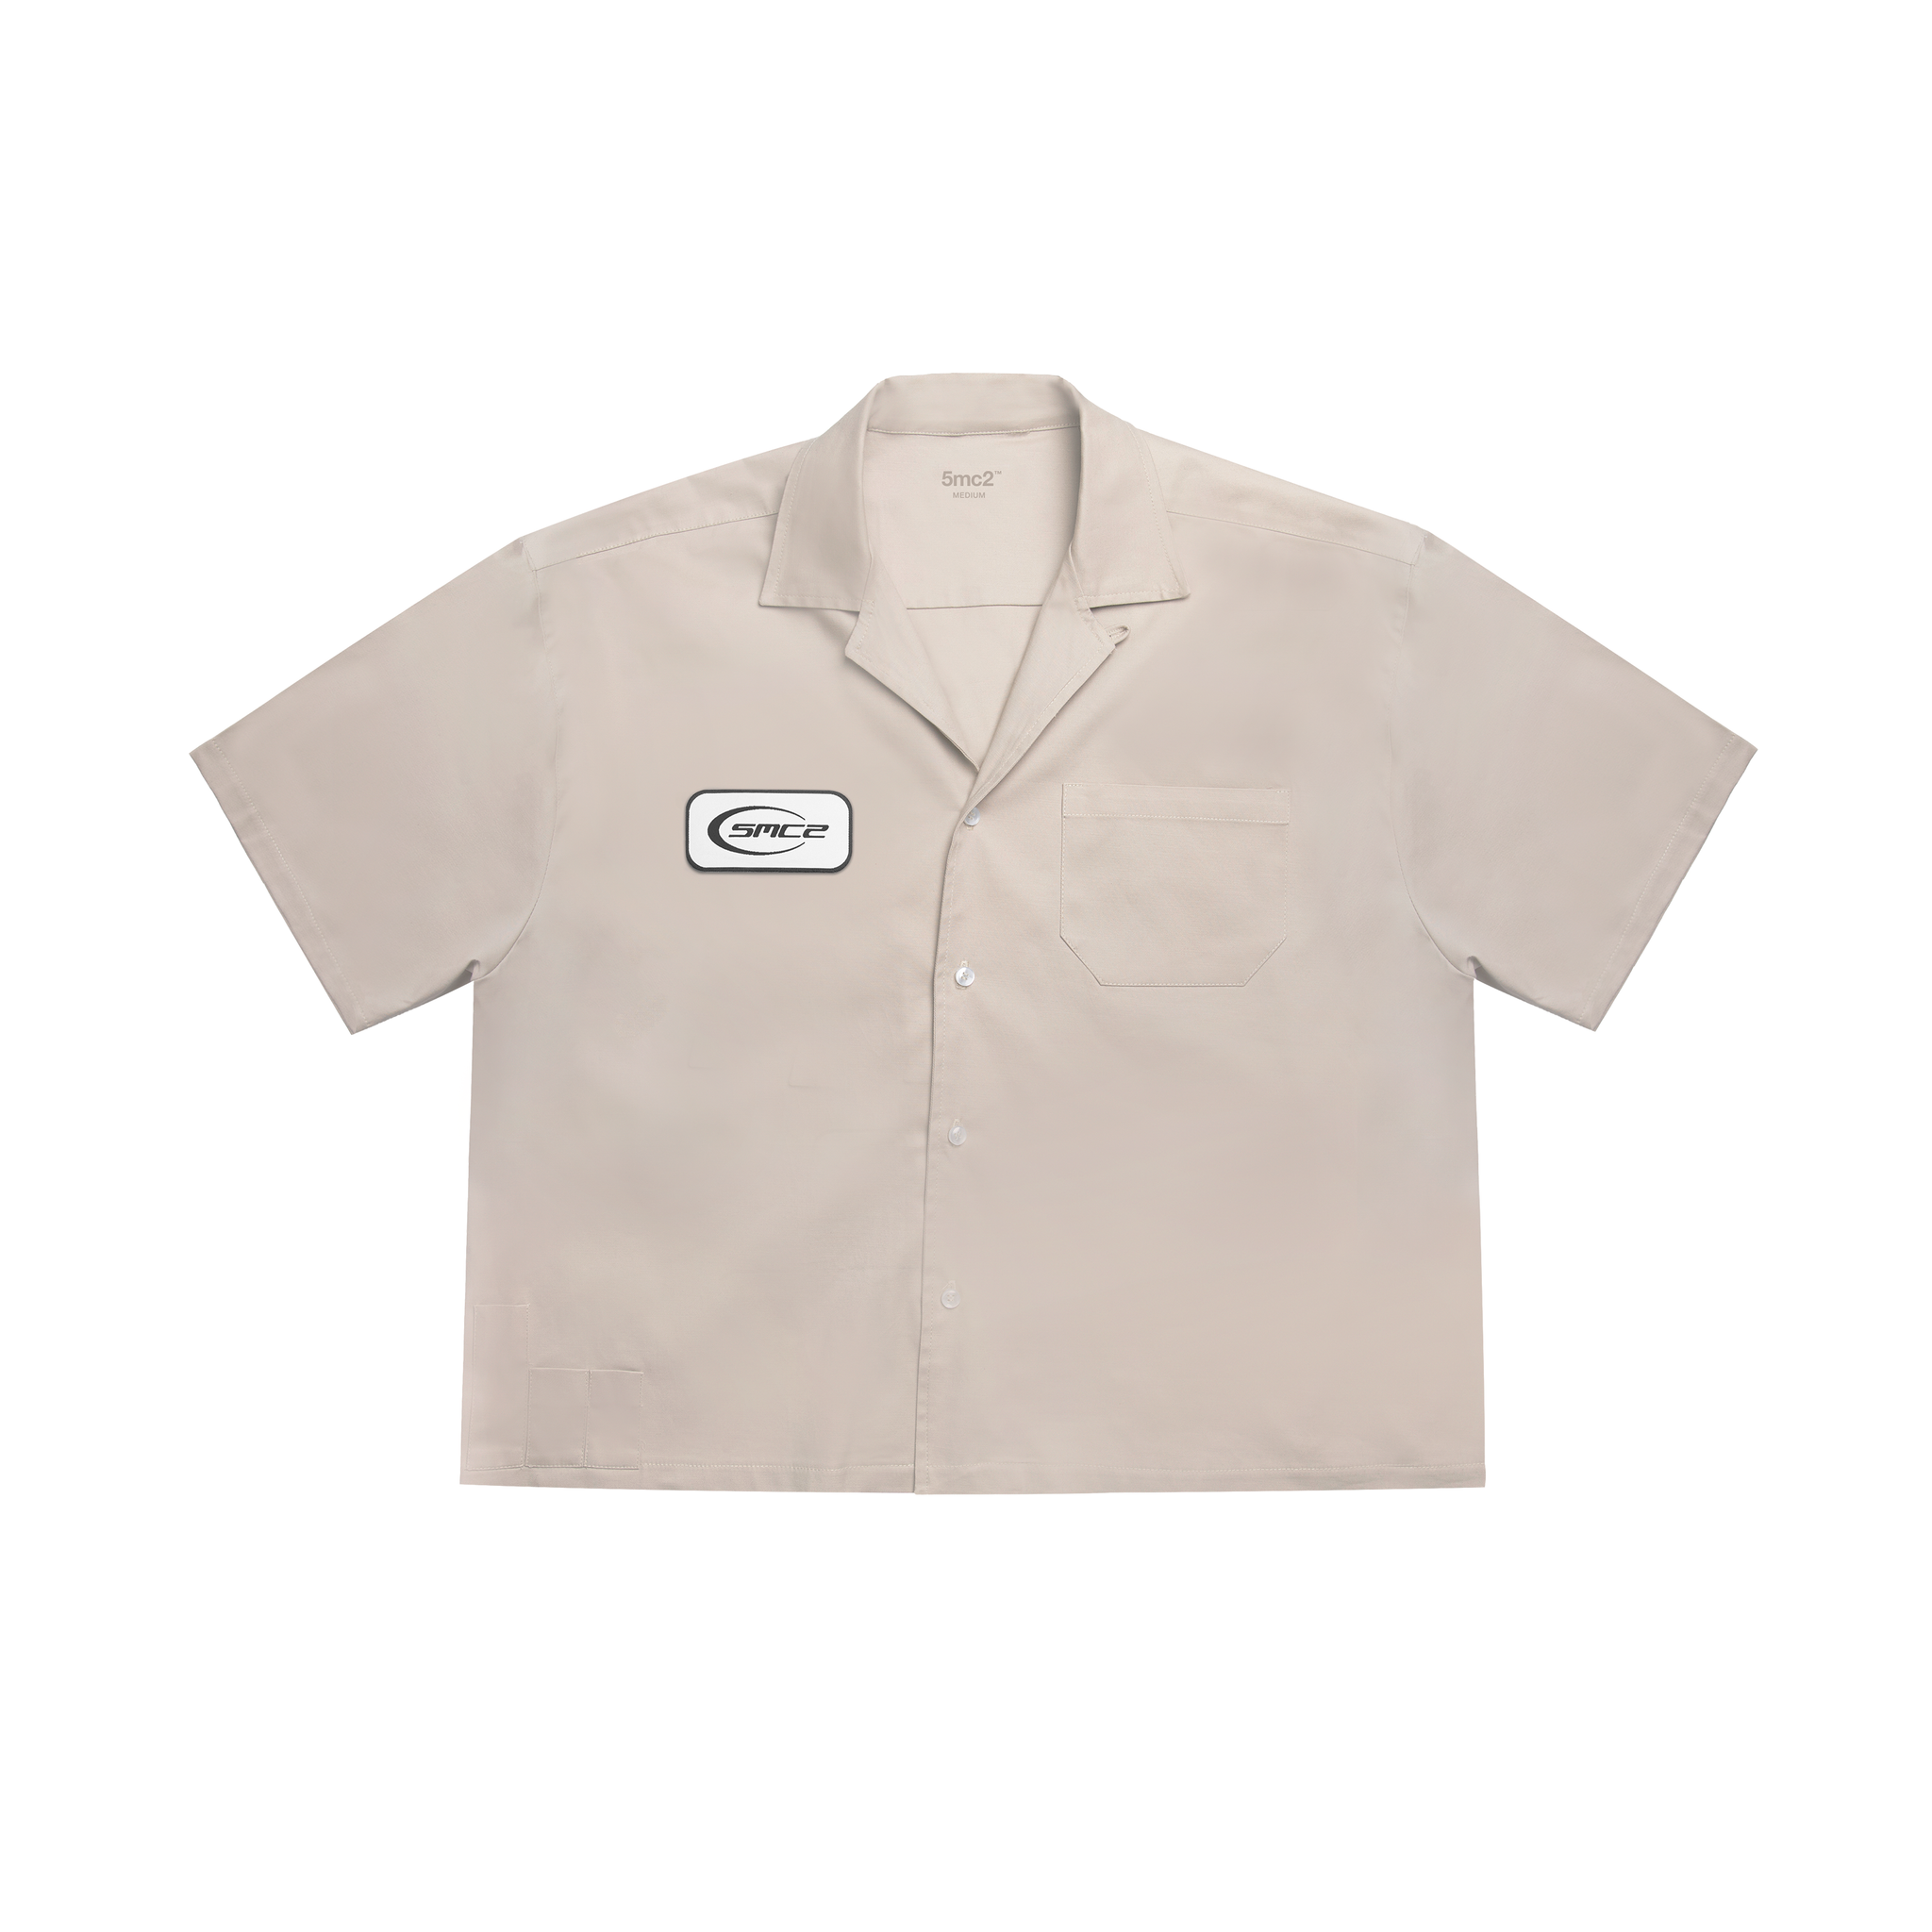 Desert OG Worker Shirt - 5mc2™